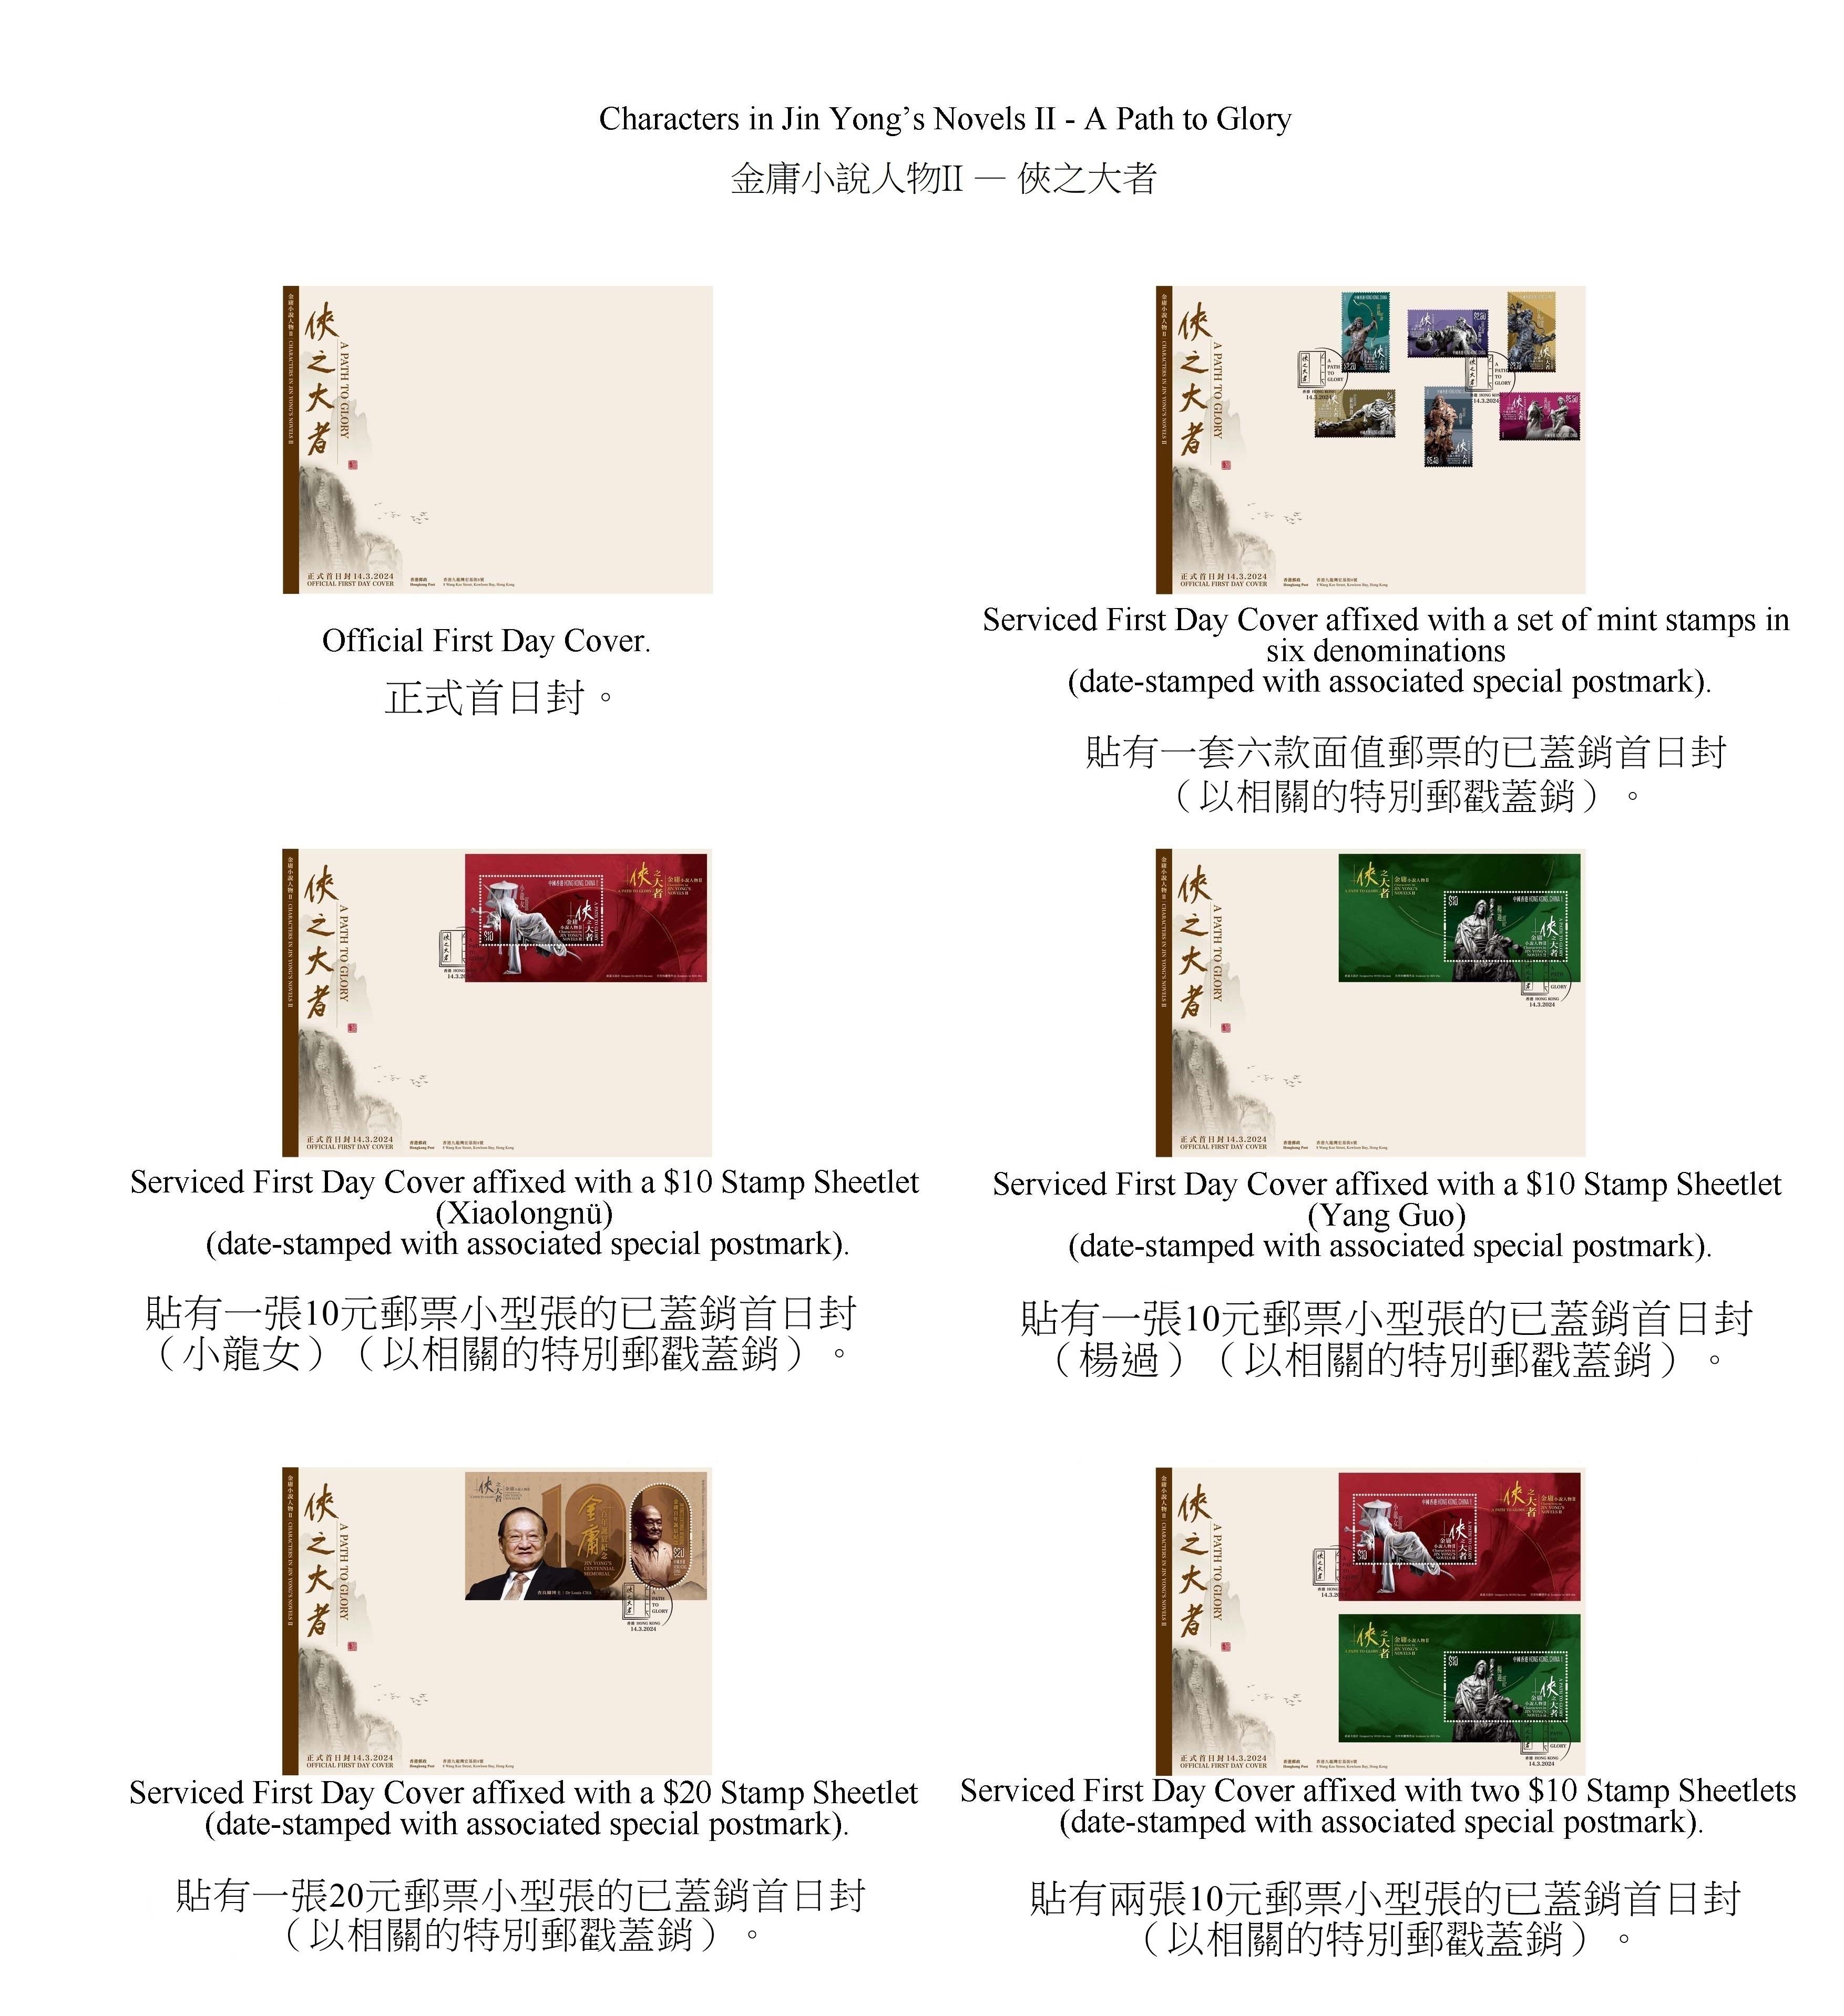 香港邮政三月十四日（星期四）发行以「金庸小说人物II──侠之大者」为题的特别邮票及相关集邮品。图示首日封。
 